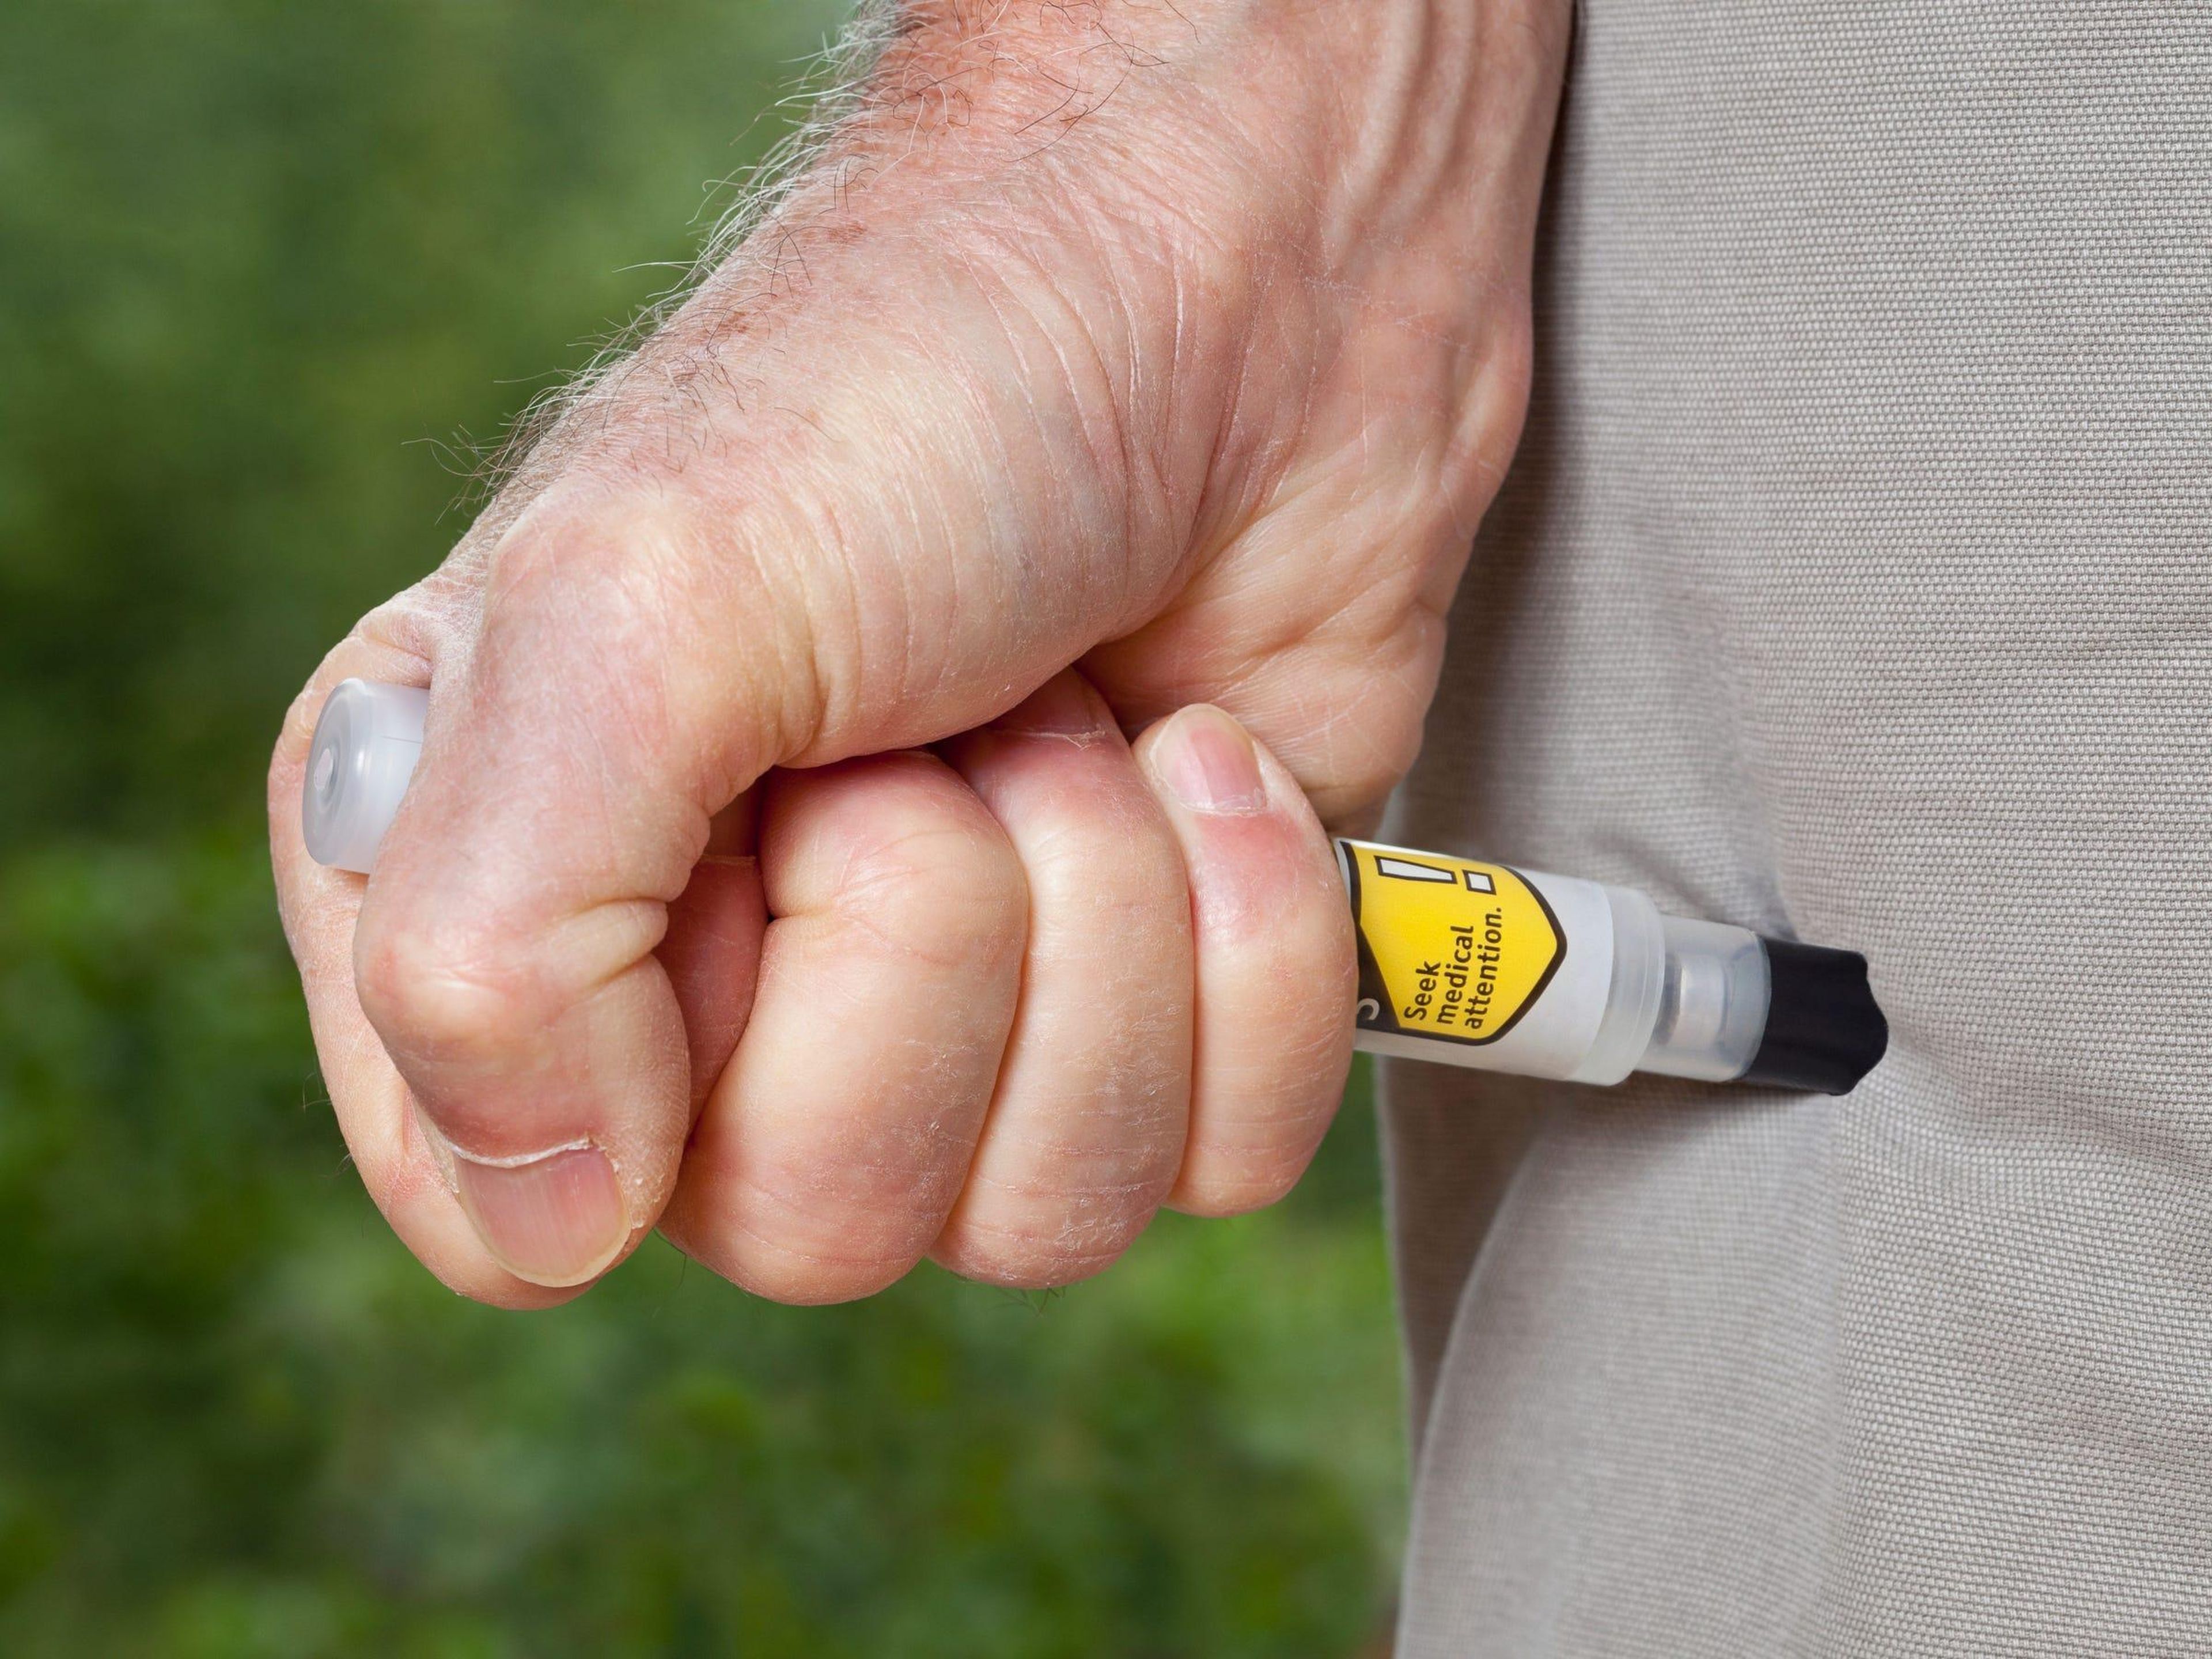 Un EpiPen se puede usar en una emergencia para tratar el shock anafiláctico inyectando epinefrina a través de la ropa.